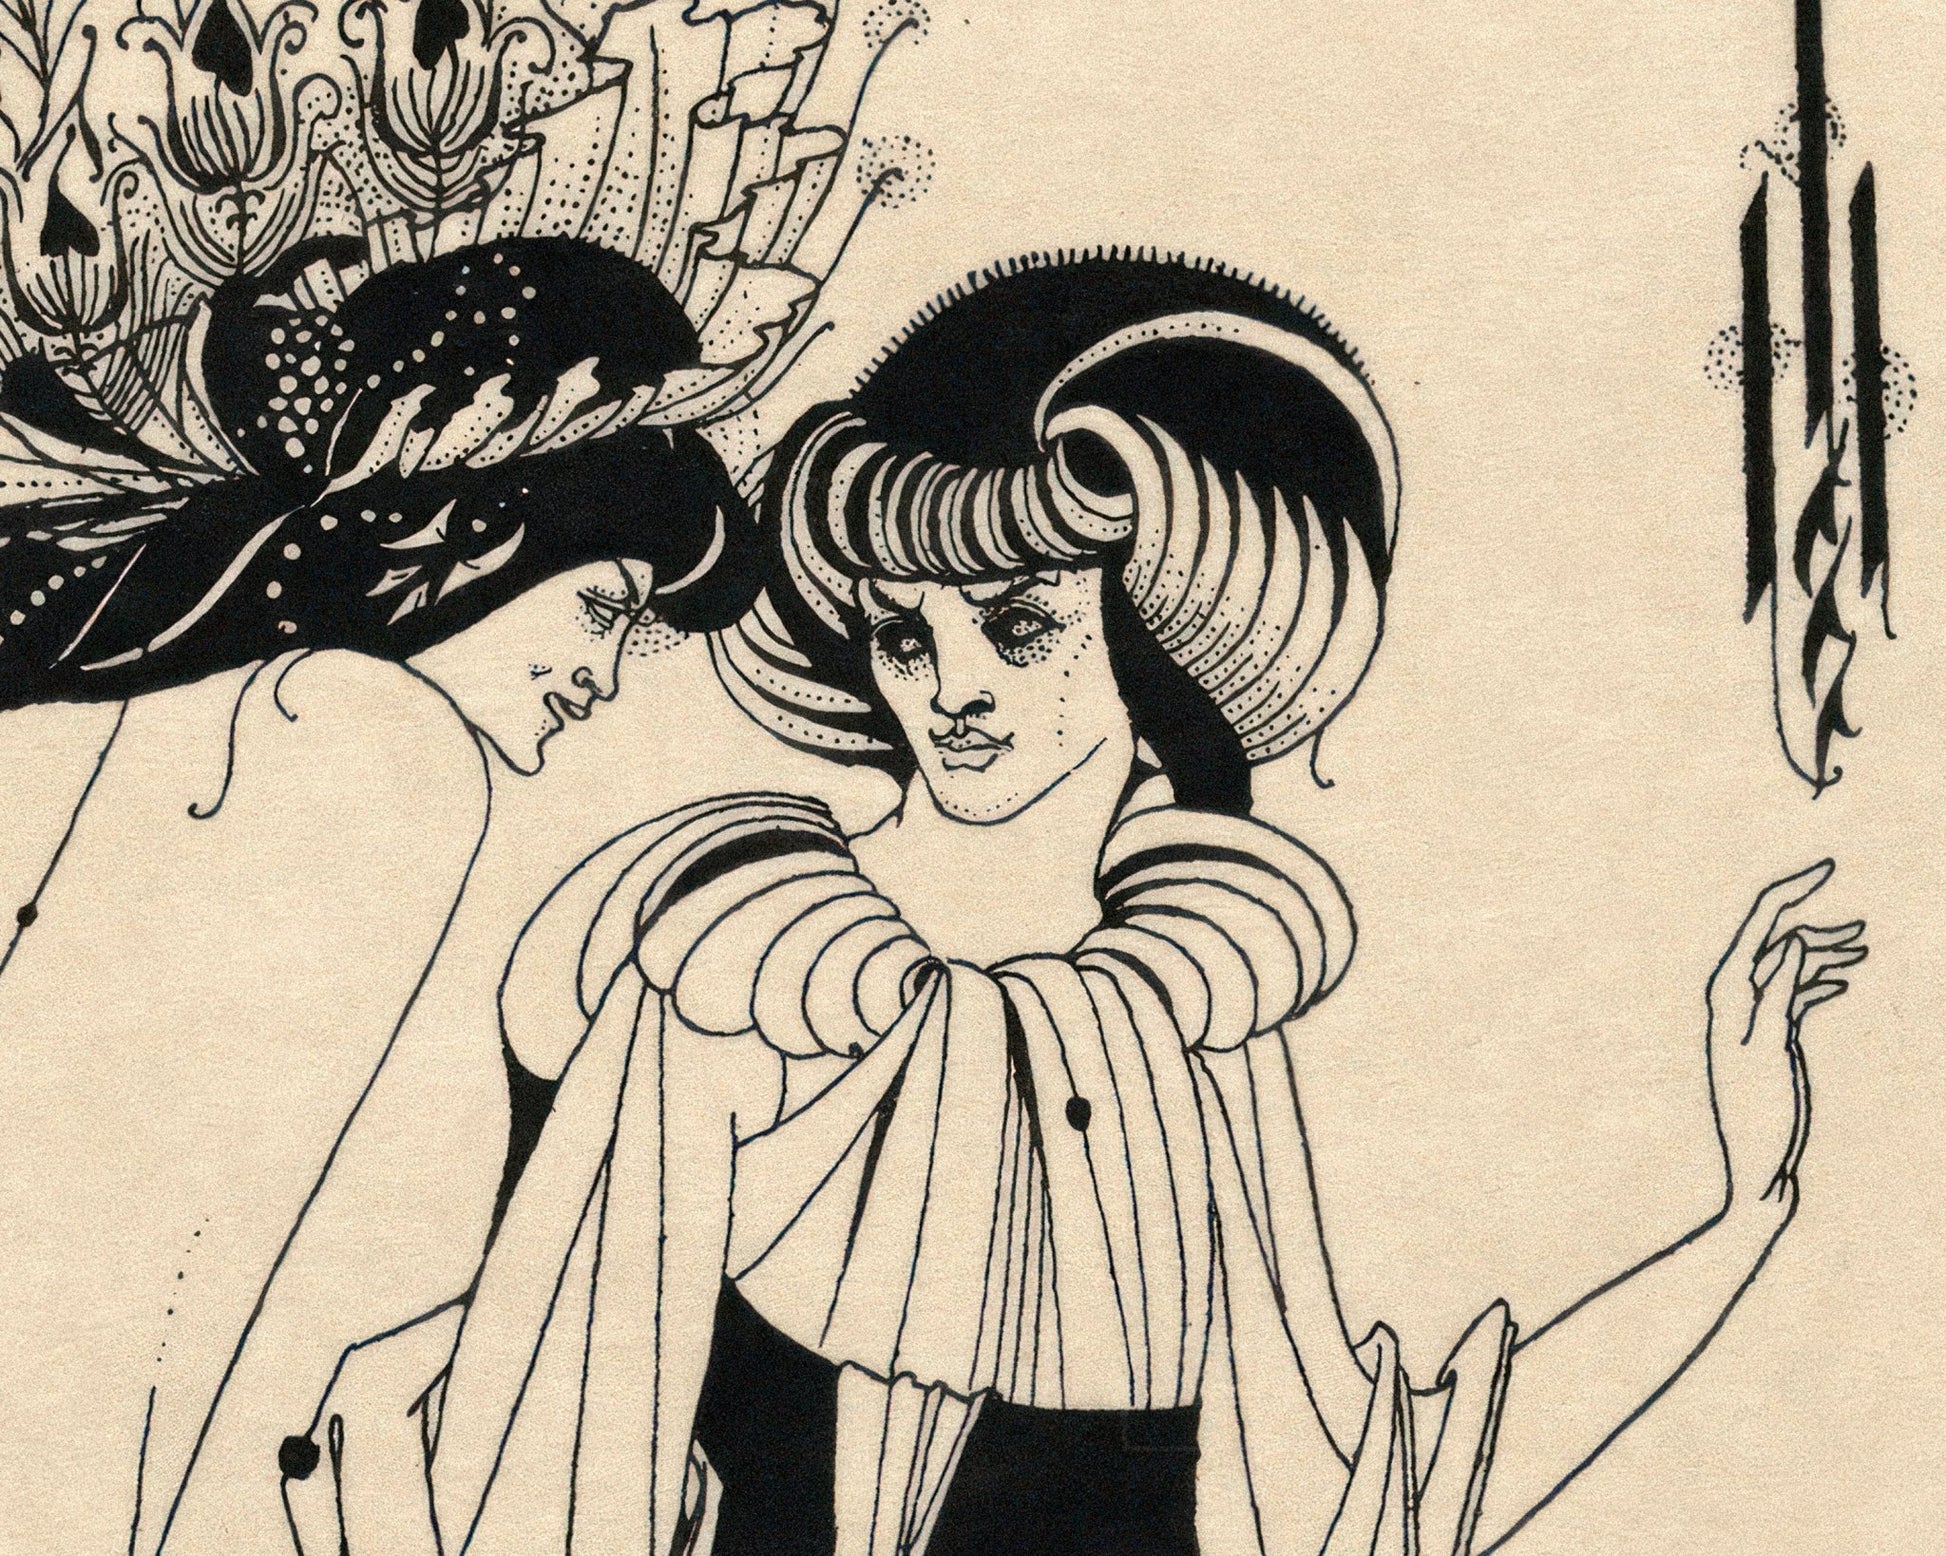 Aubrey Beardsley "Salomé: The Peacock Skirt" (c.1907) - Mabon Gallery